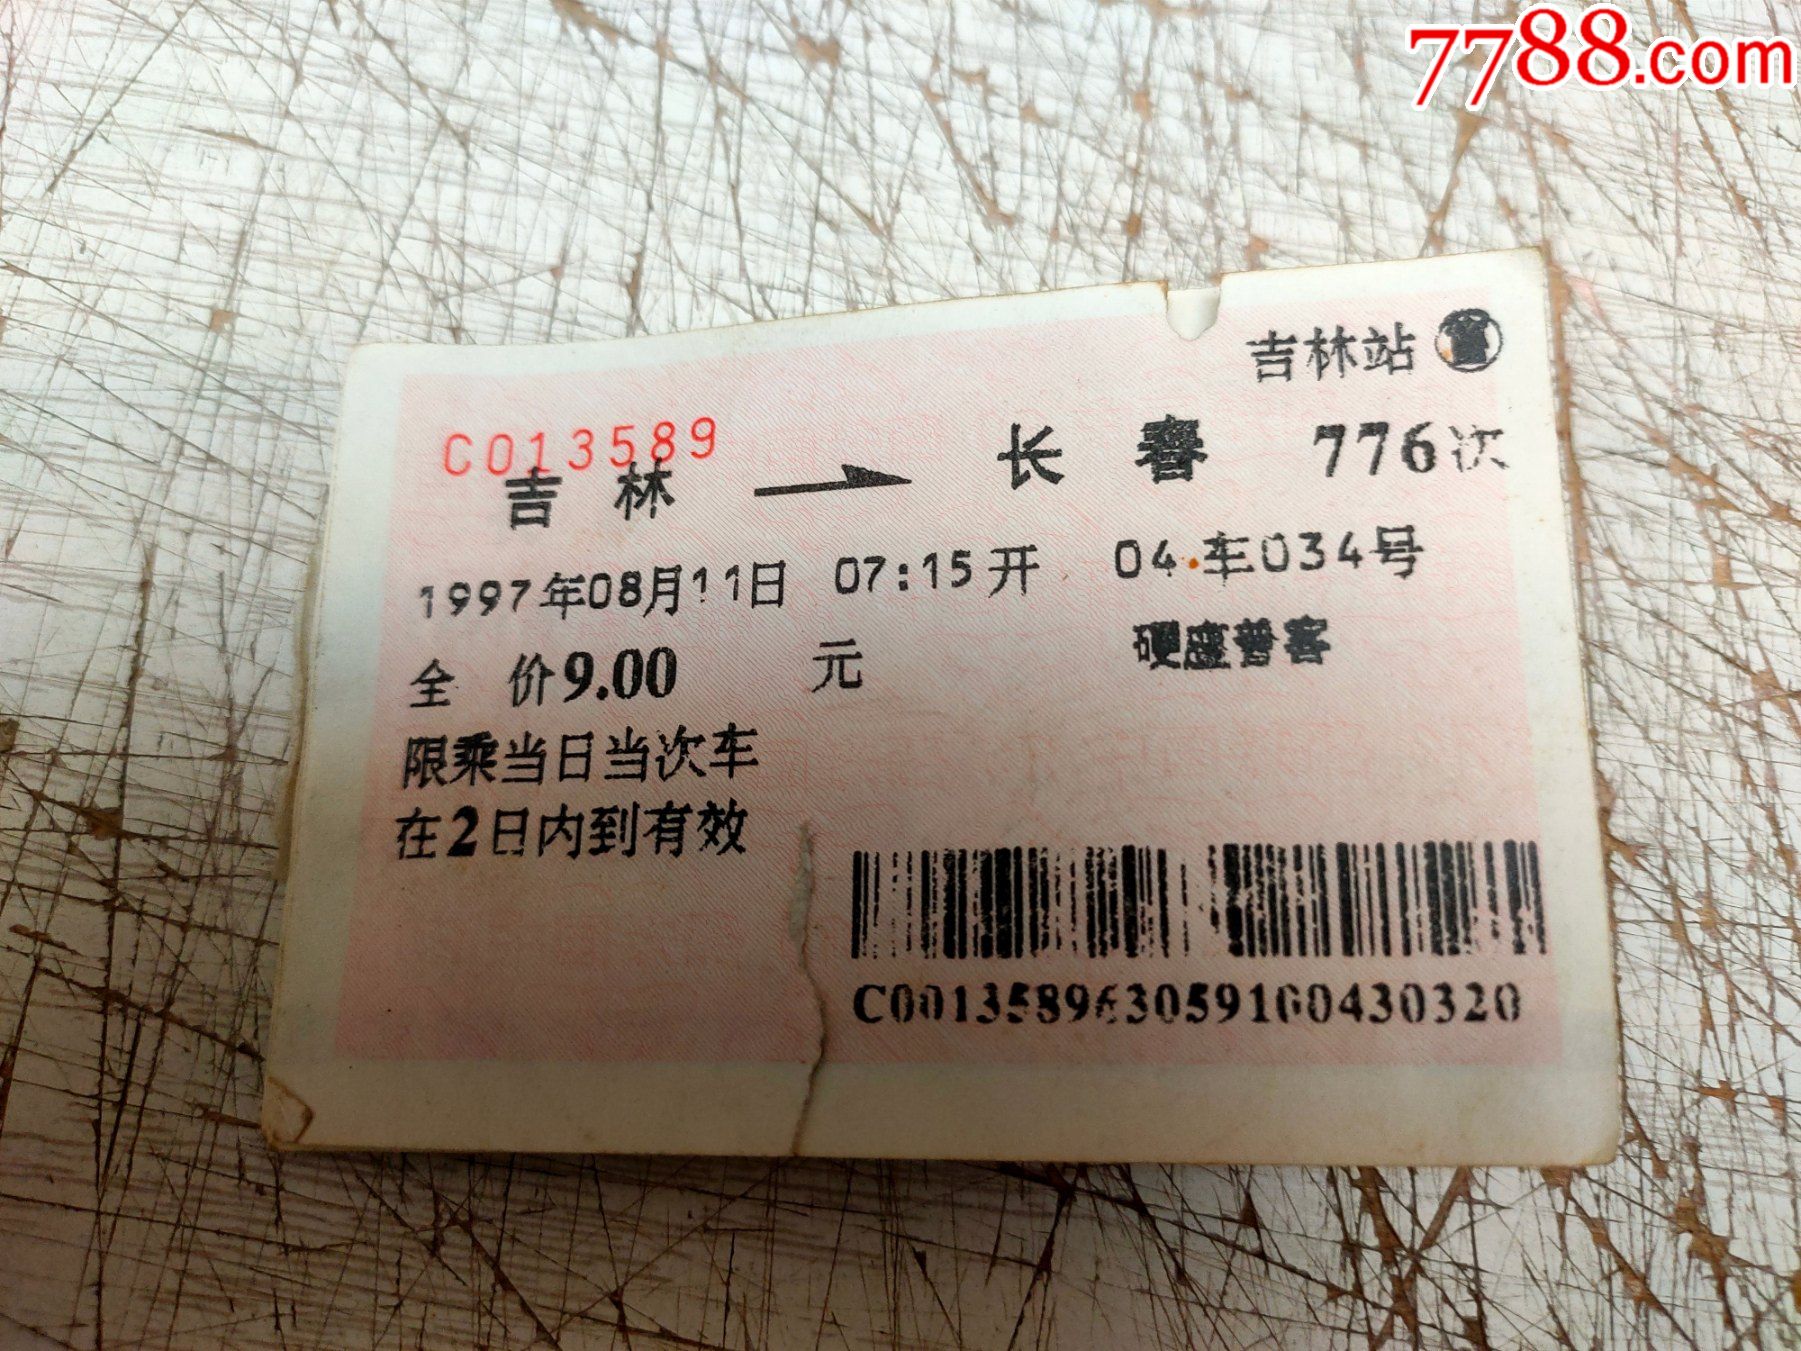 老火车票2张合售（济南-兖州，济宁-济南）-价格:1元-au33450968-火车票 -加价-7788收藏__收藏热线